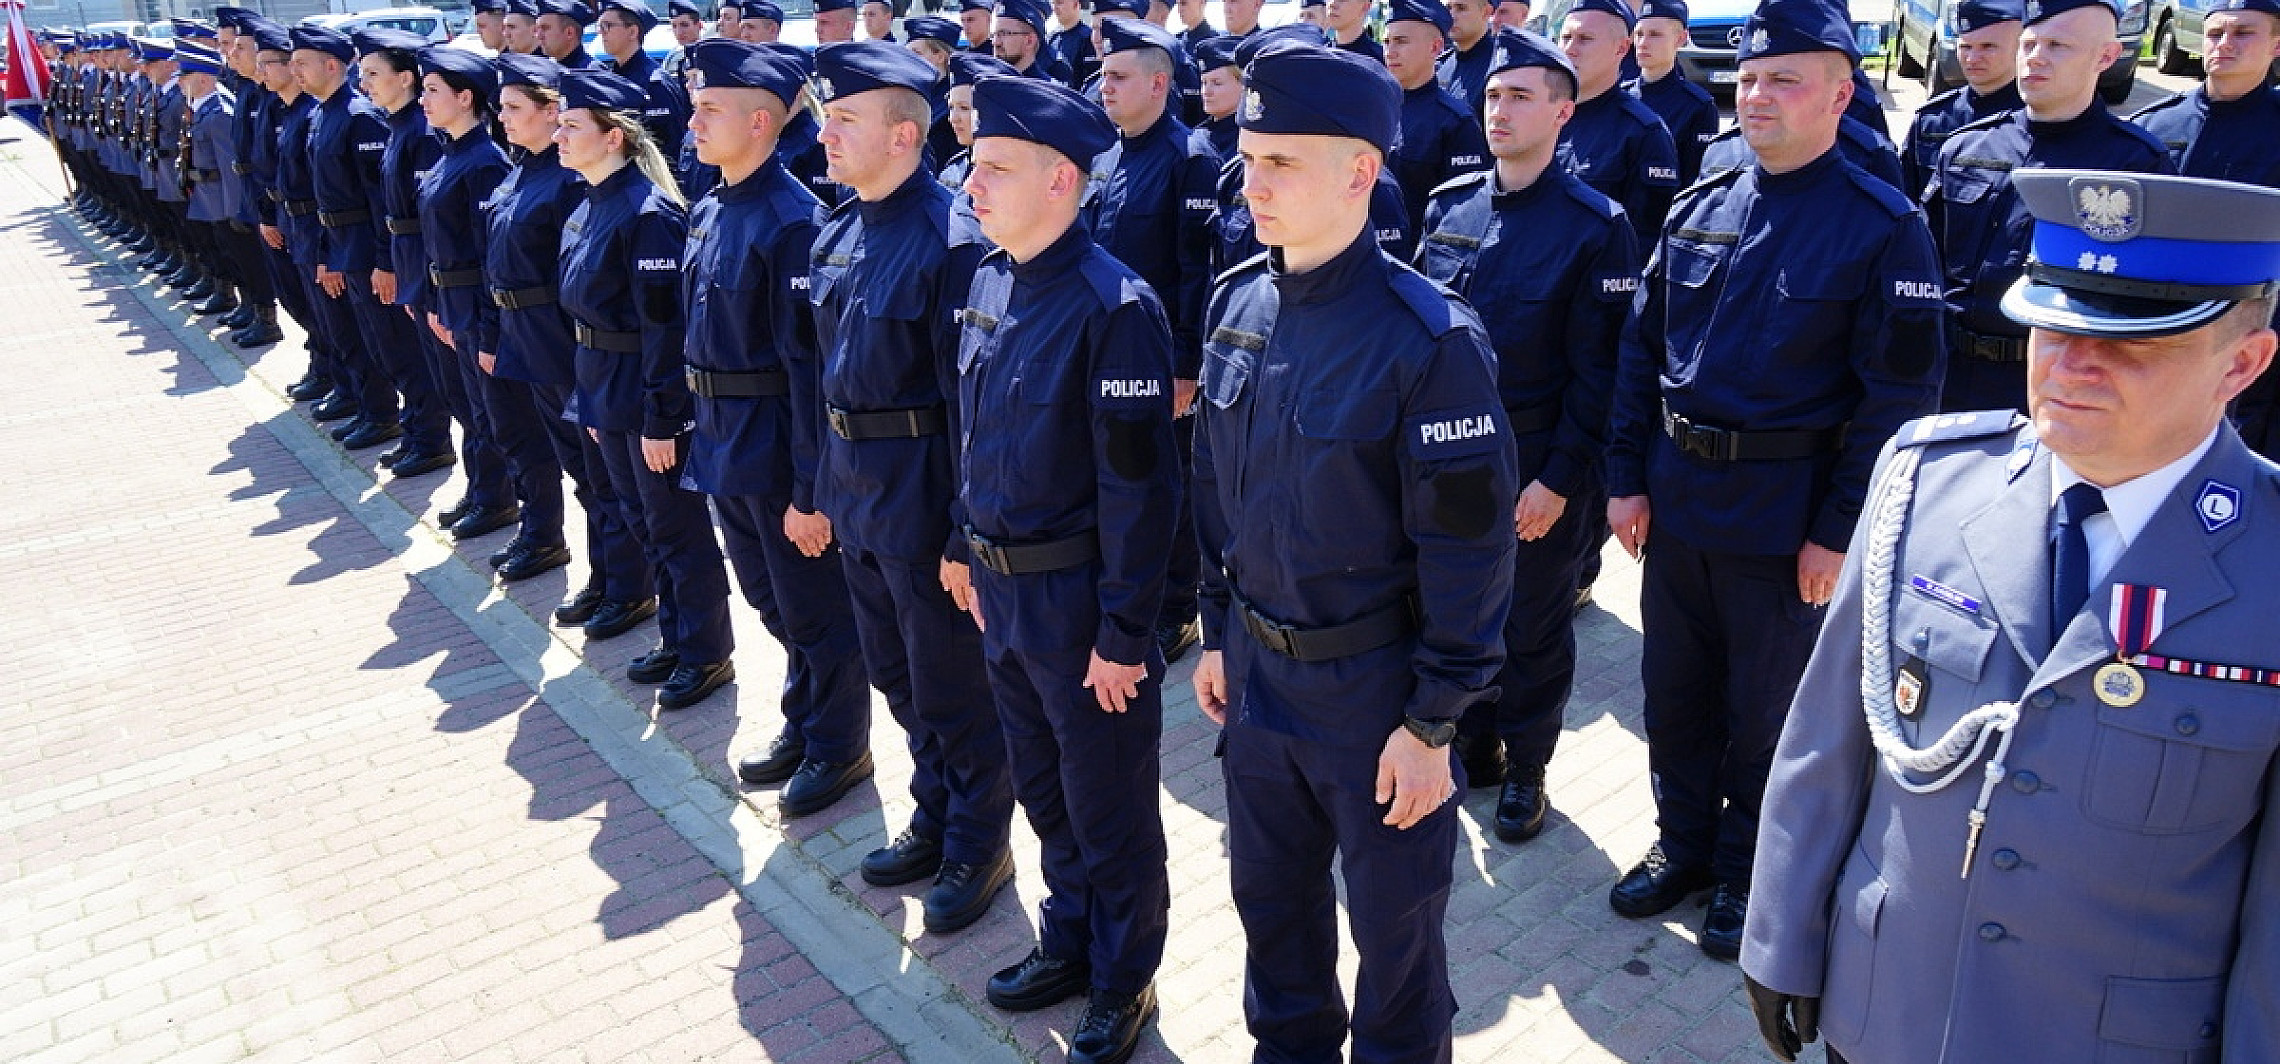 Bydgoszcz - 29 nowych policjantów w Bydgoszczy